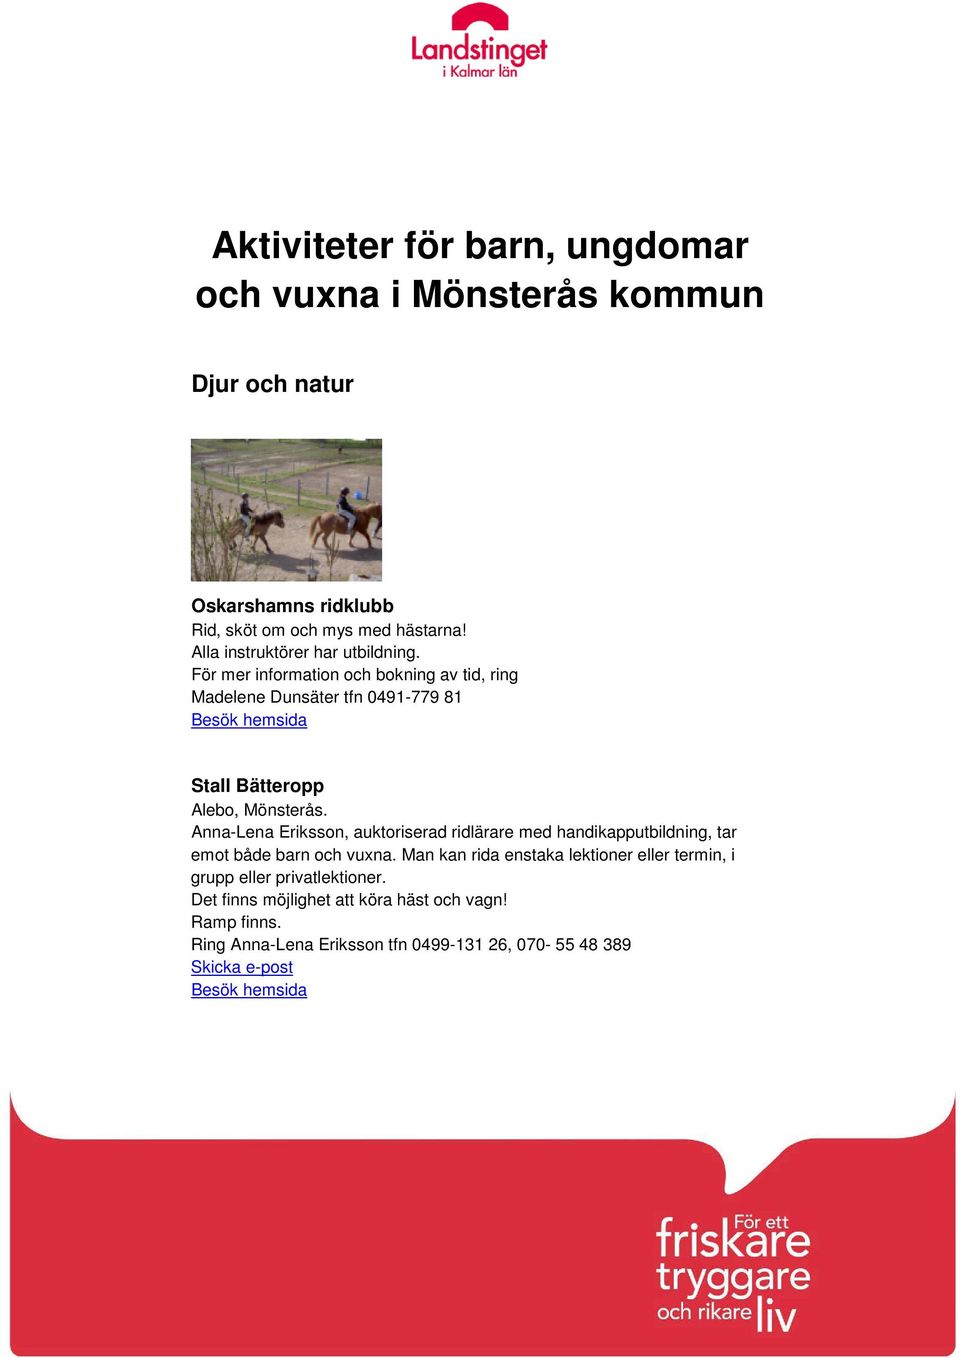 För mer information och bokning av tid, ring Madelene Dunsäter tfn 0491-779 81 Stall Bätteropp Alebo, Mönsterås.